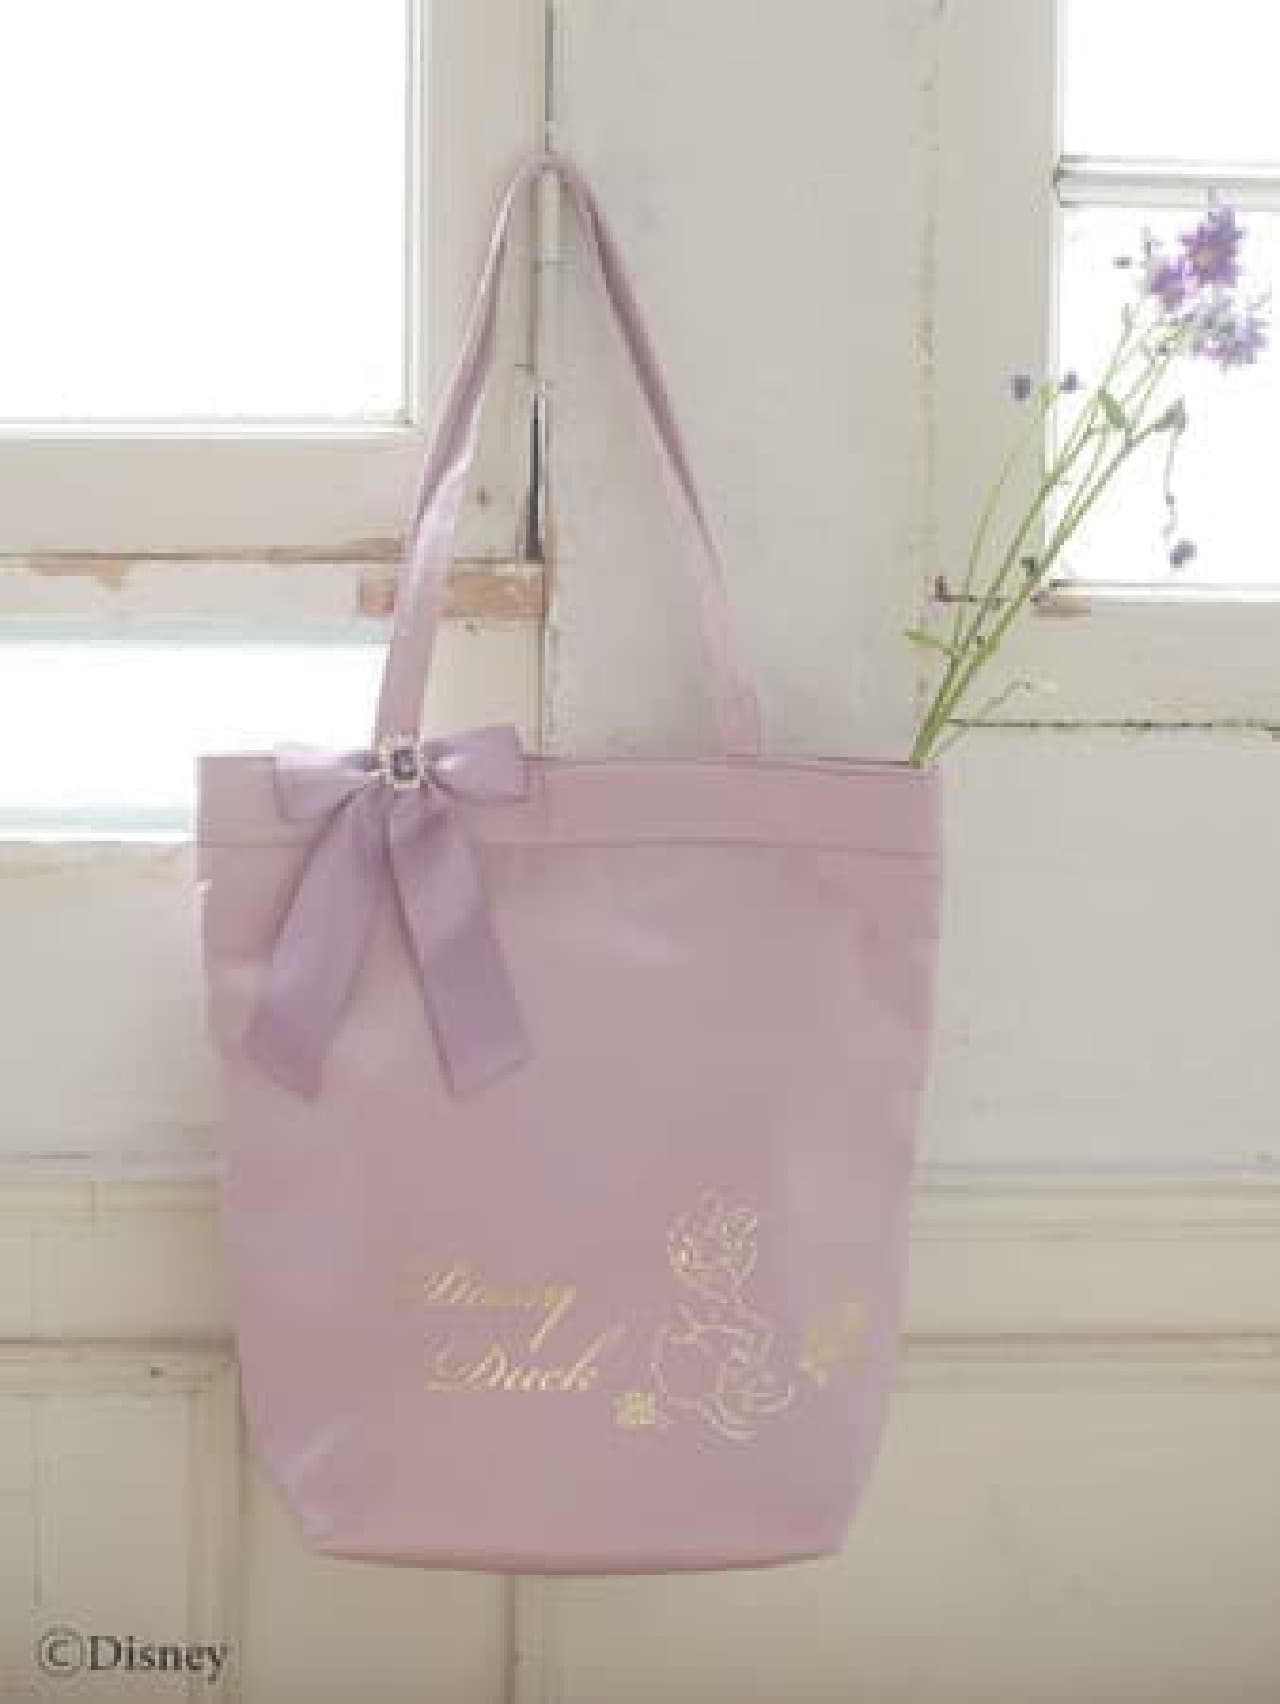 Maison de FLEUR "Daisy Duck Collection" Lavender-colored tote bags, pouches, etc.